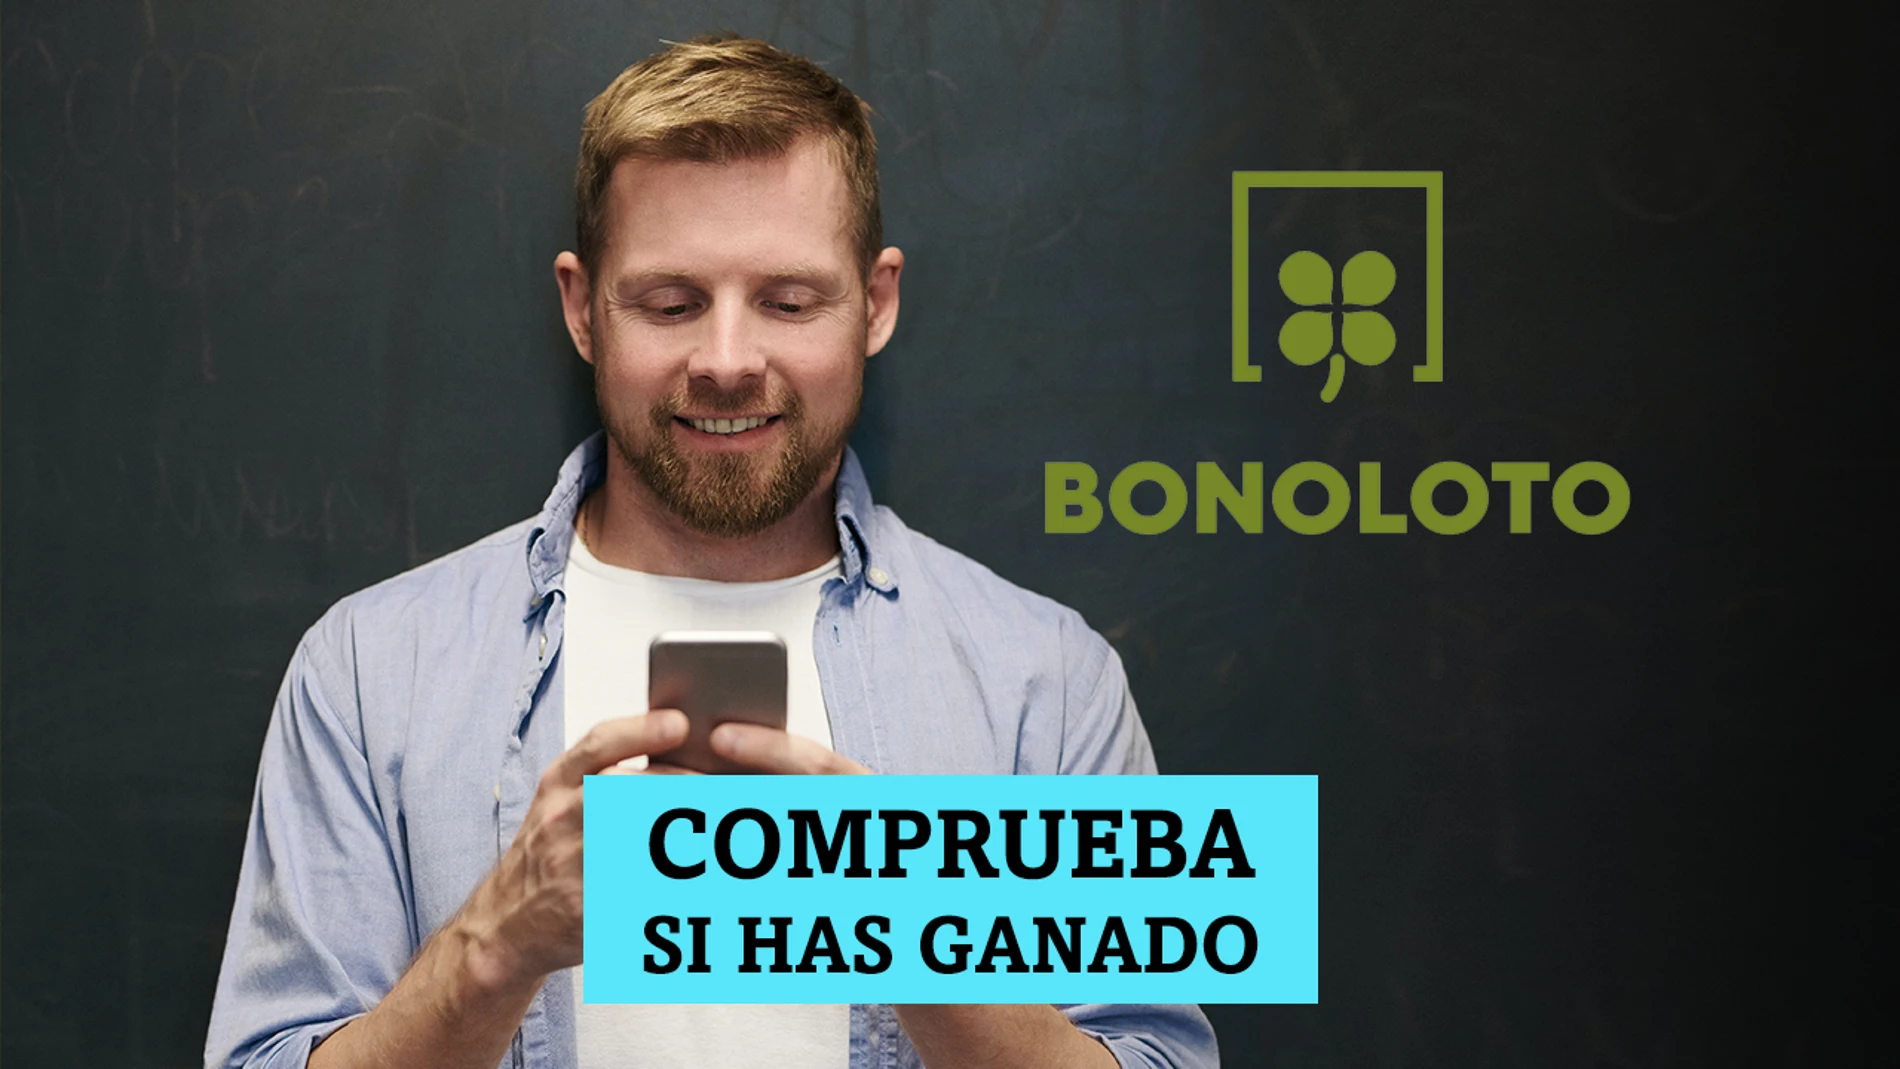 Bonoloto, hoy | Comprobar miércoles 16 de febrero de 2022